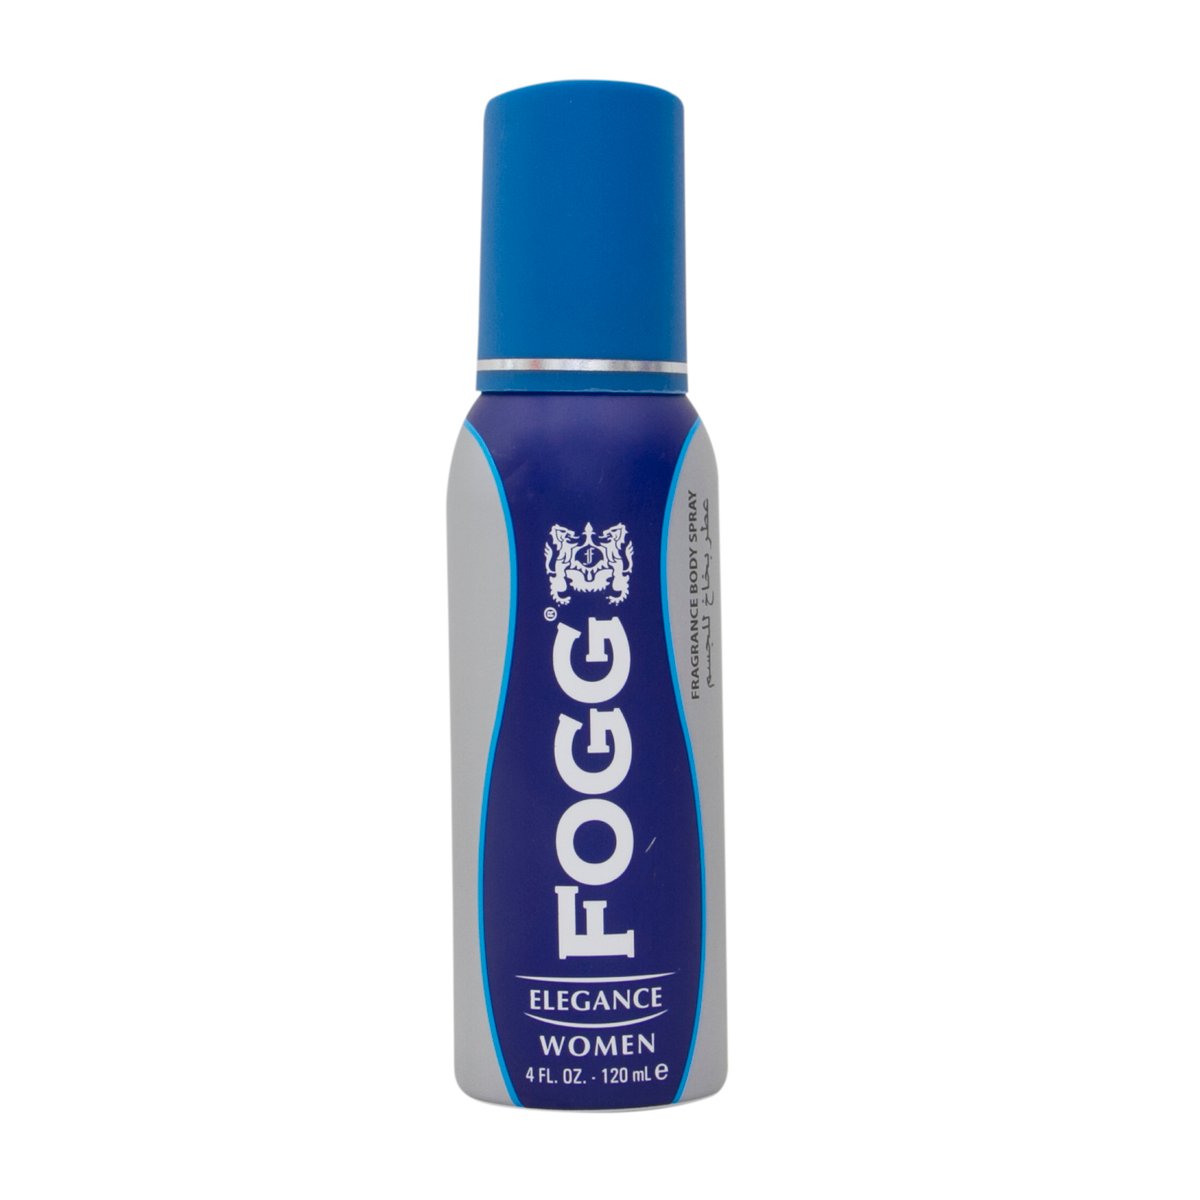 Fogg Elegance Women Fragrance Body Spray 120 ml